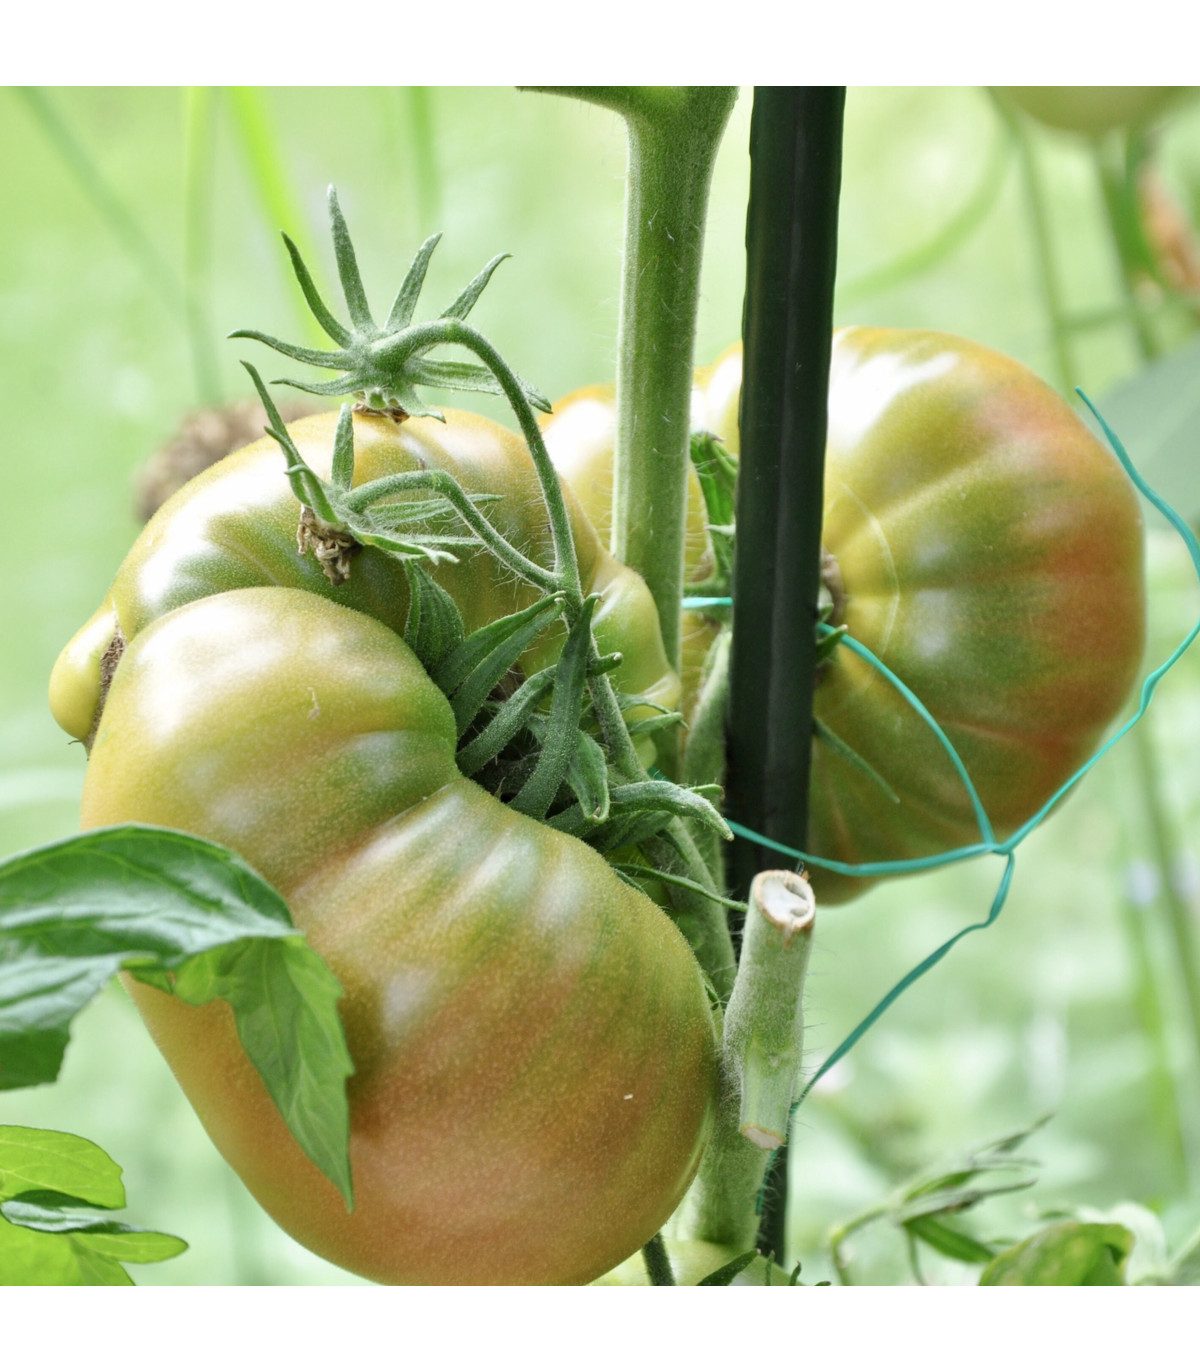 BIO Rajče Ananas Noire - Lycopersicon esculentum - bio osivo rajčat - 6 ks